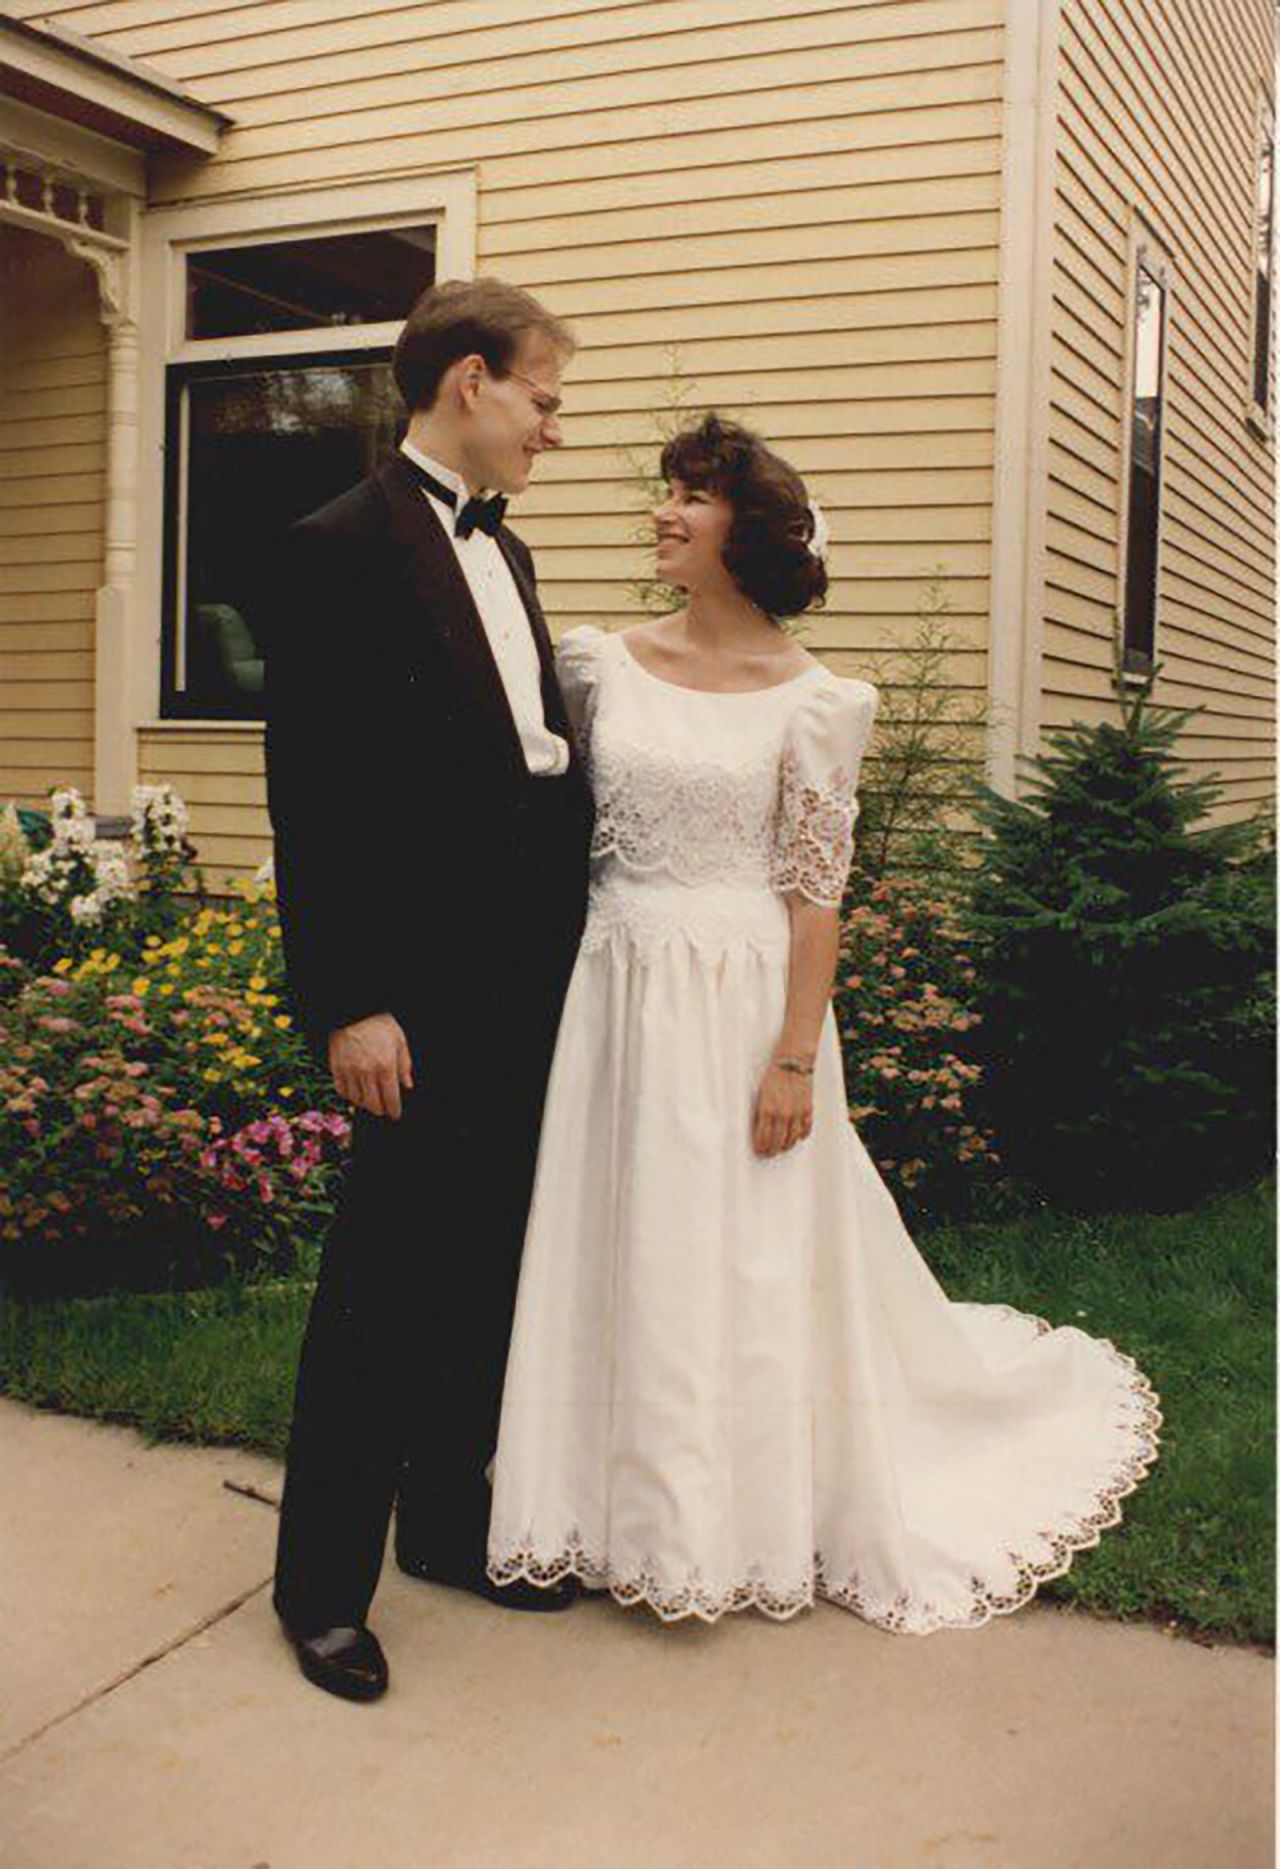 Klobuchar married attorney and professor John Bessler in 1993.